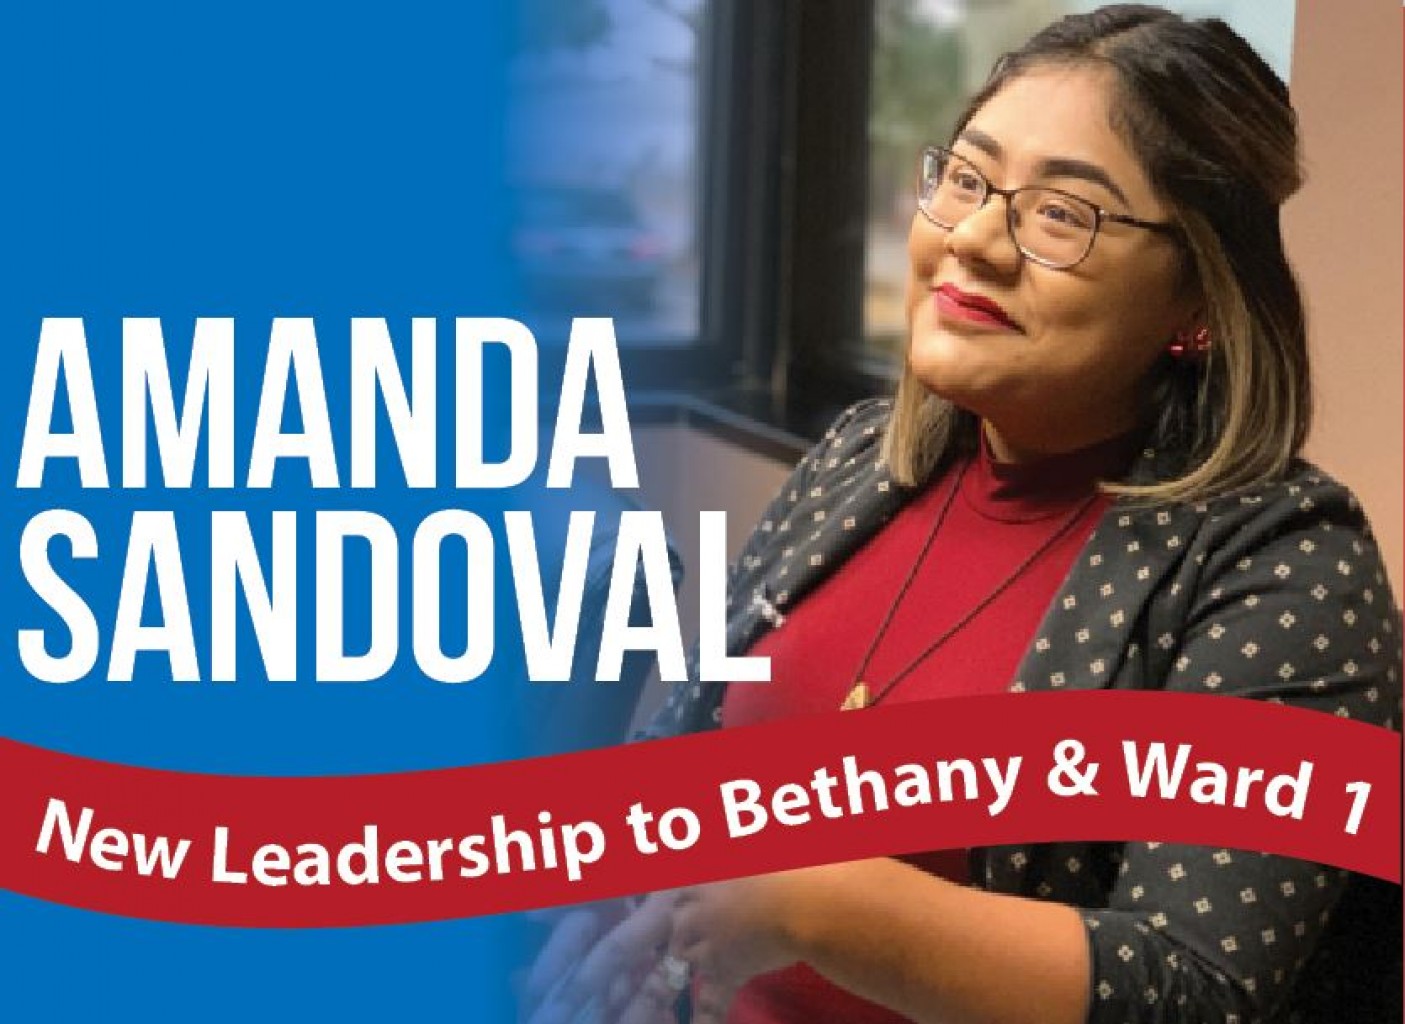 Amanda Sandoval New Leadership to Bethany & Ward 1 